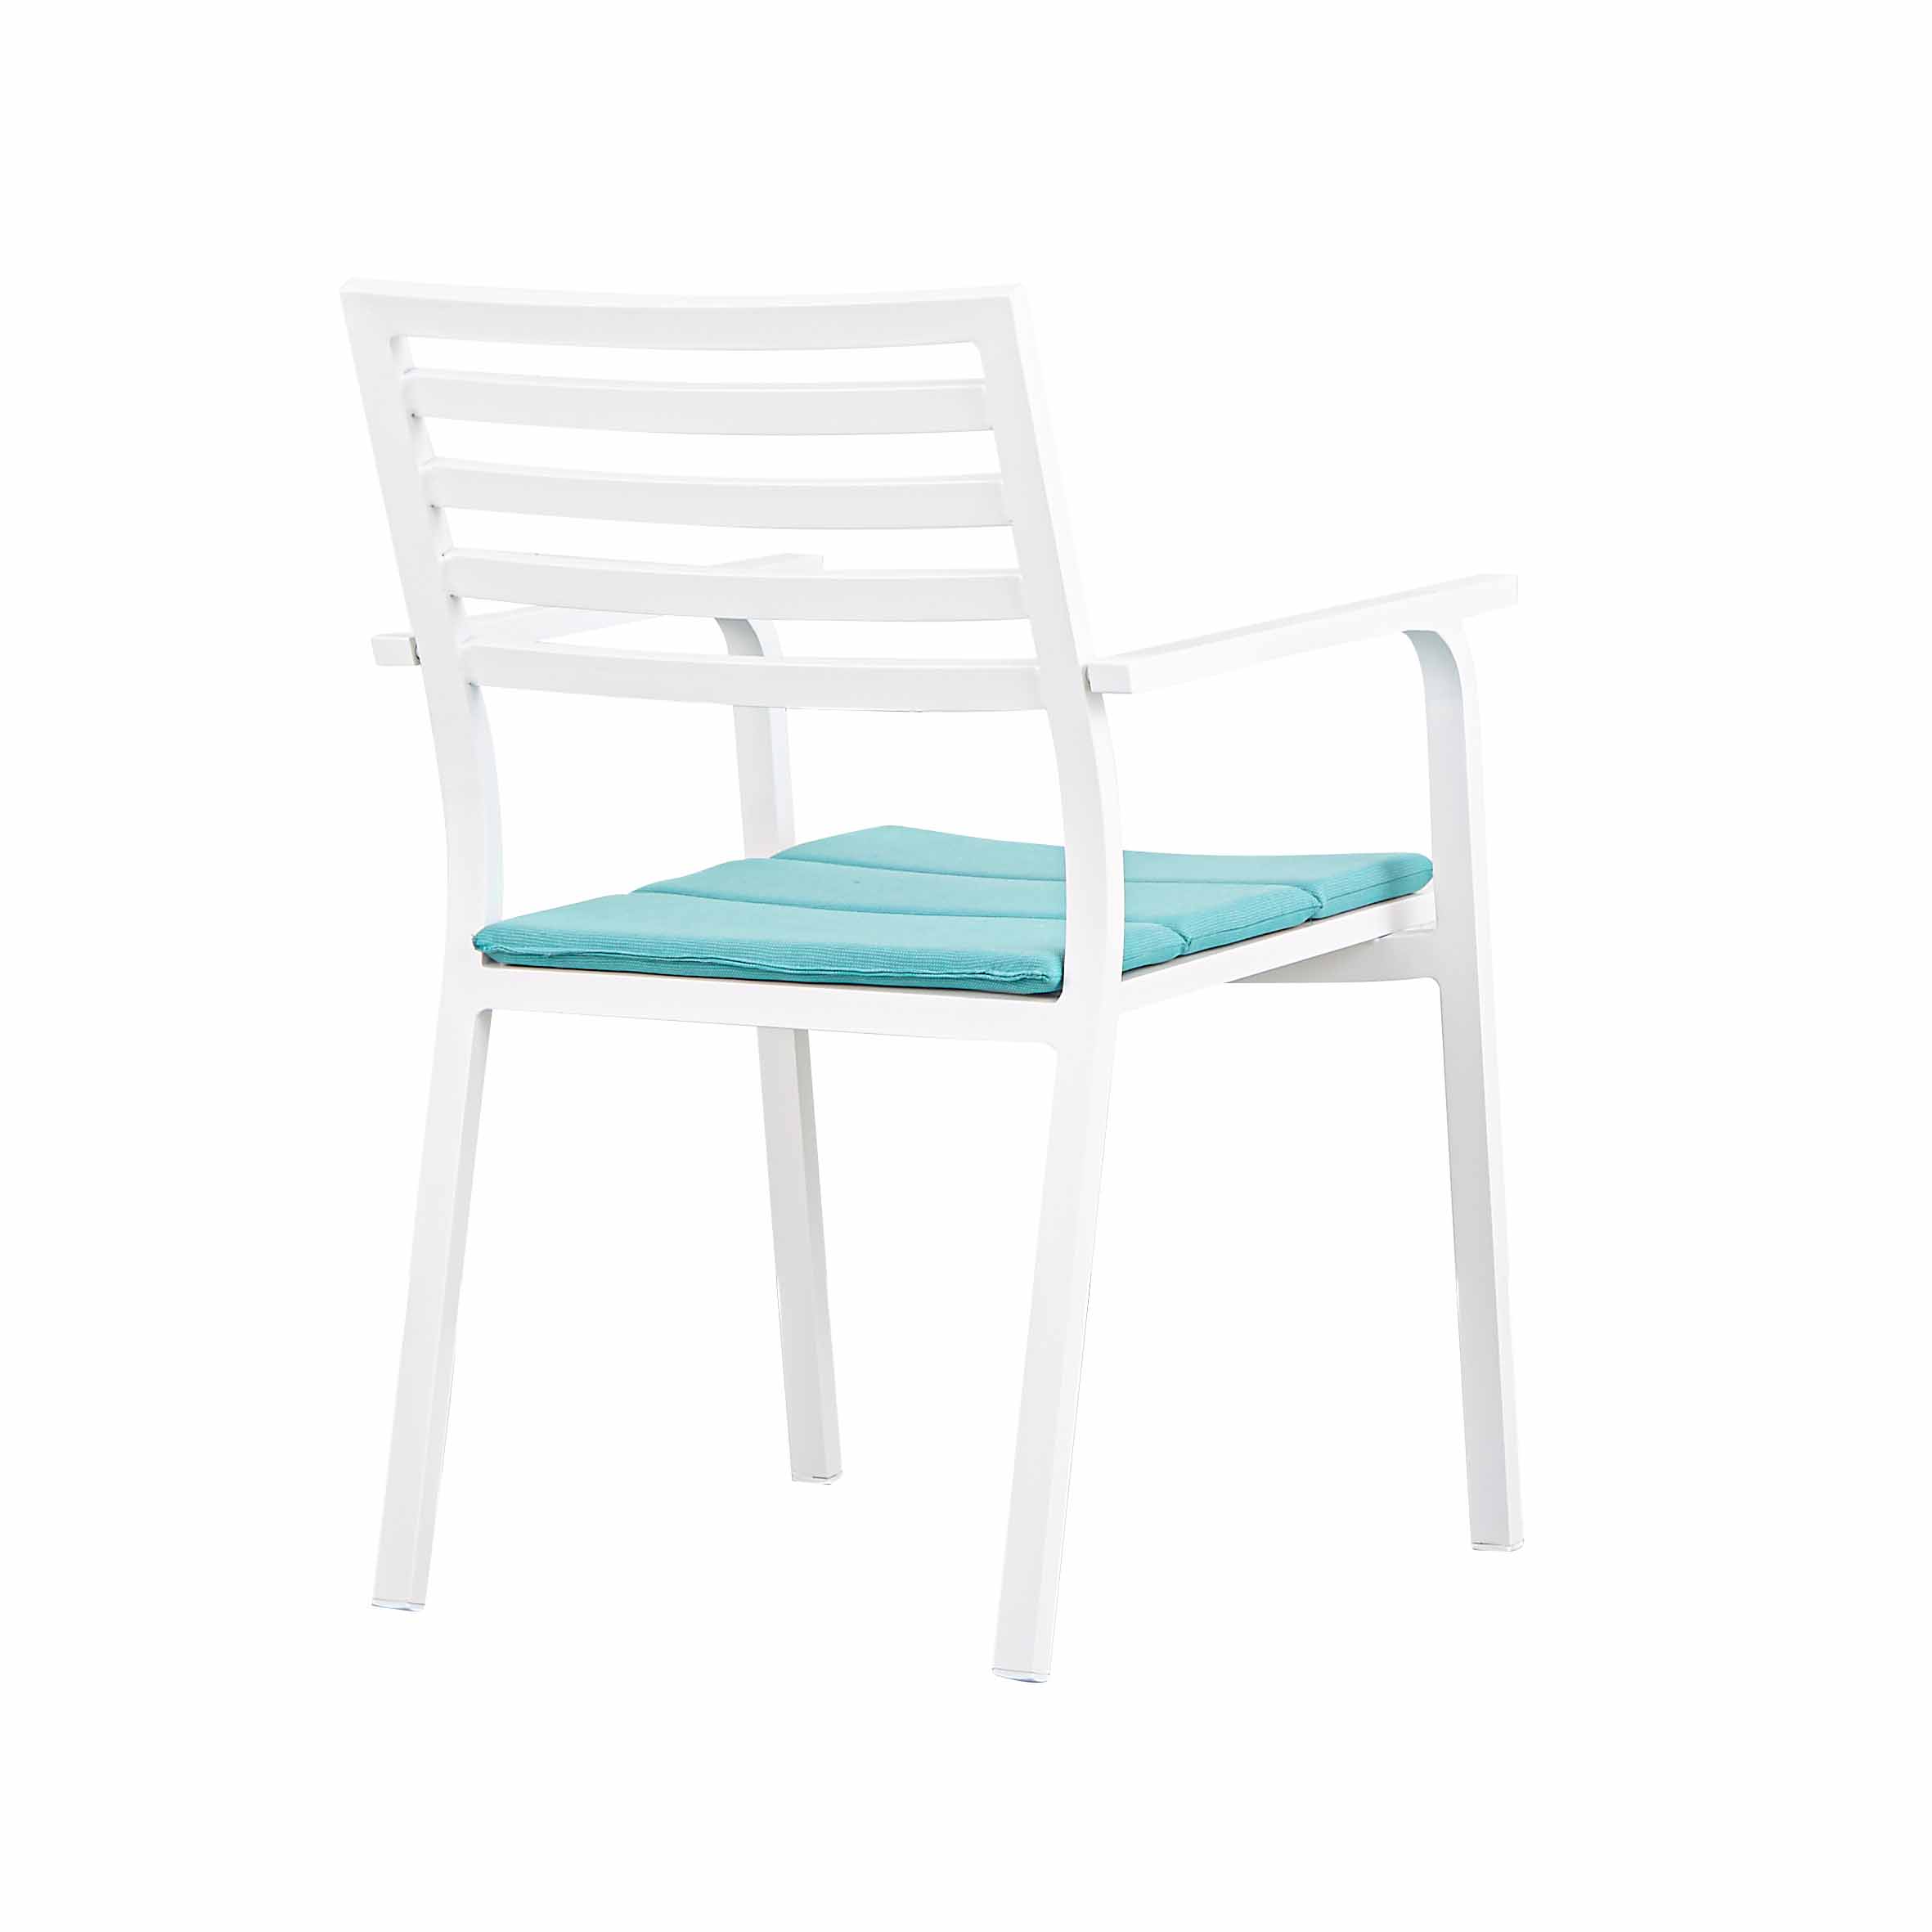 达芬奇铝板餐椅 展示3